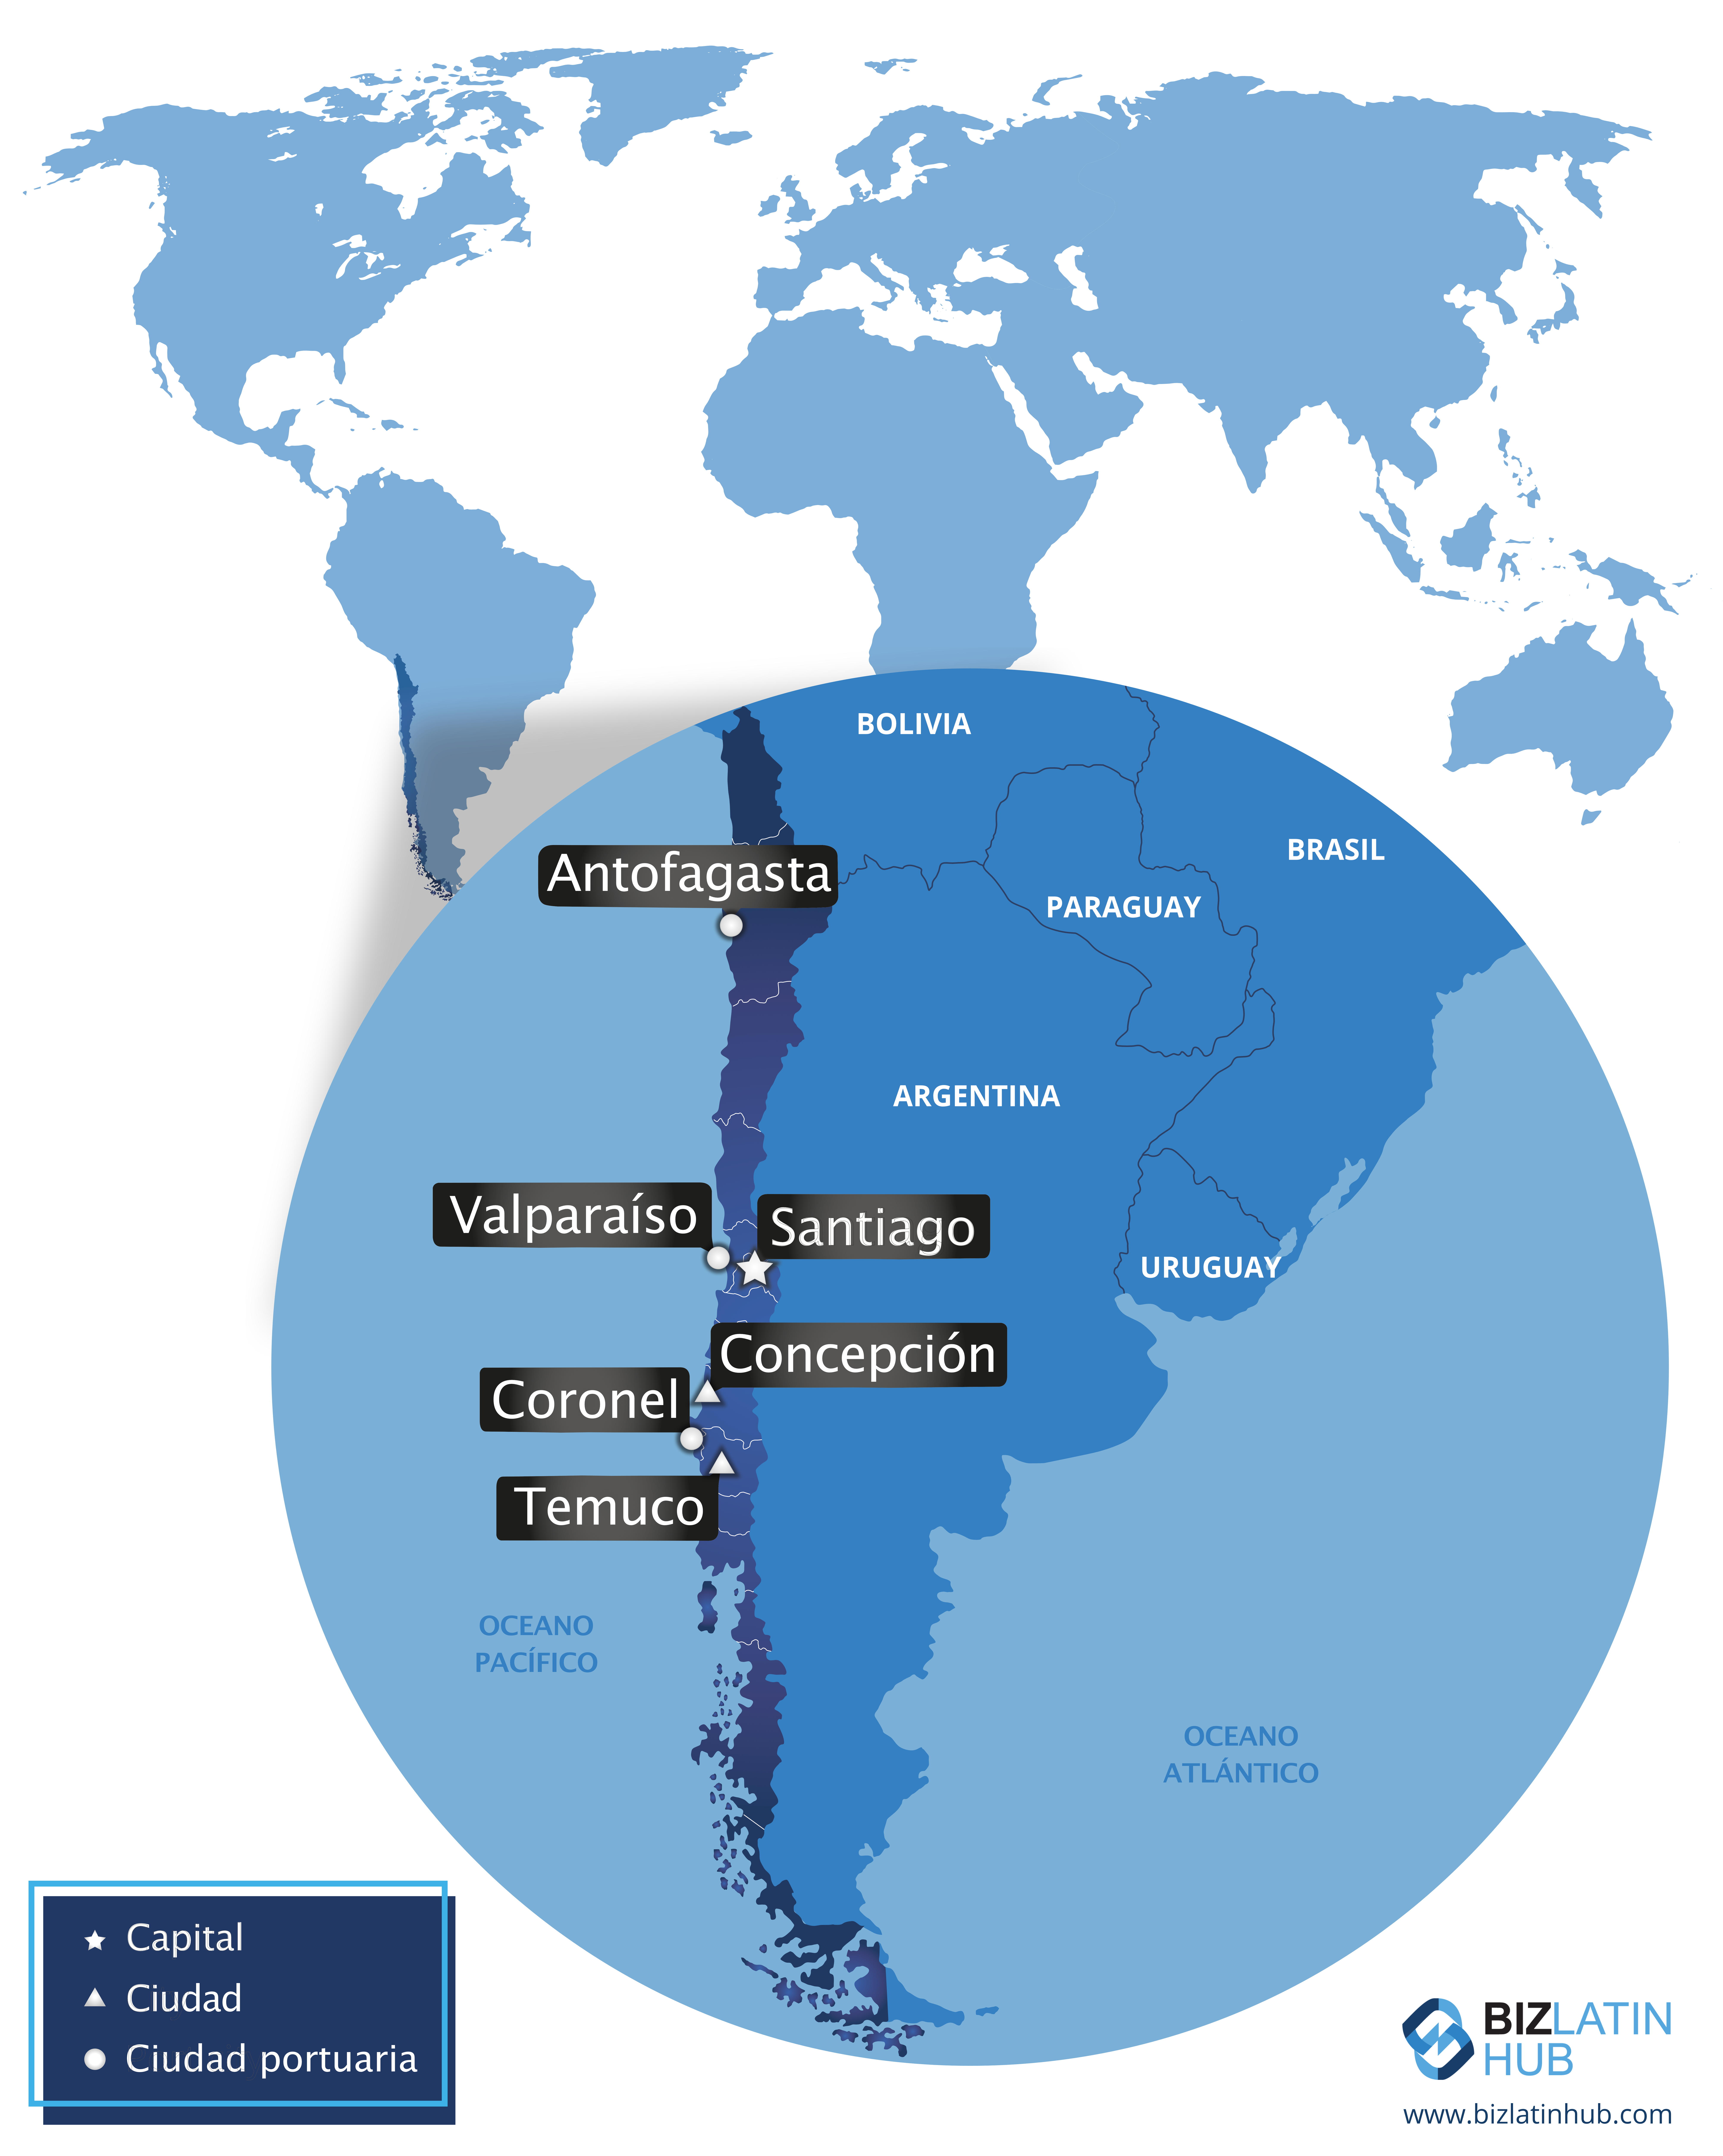 Mapa de Chile y sus principales ciudades por Biz latin hub.